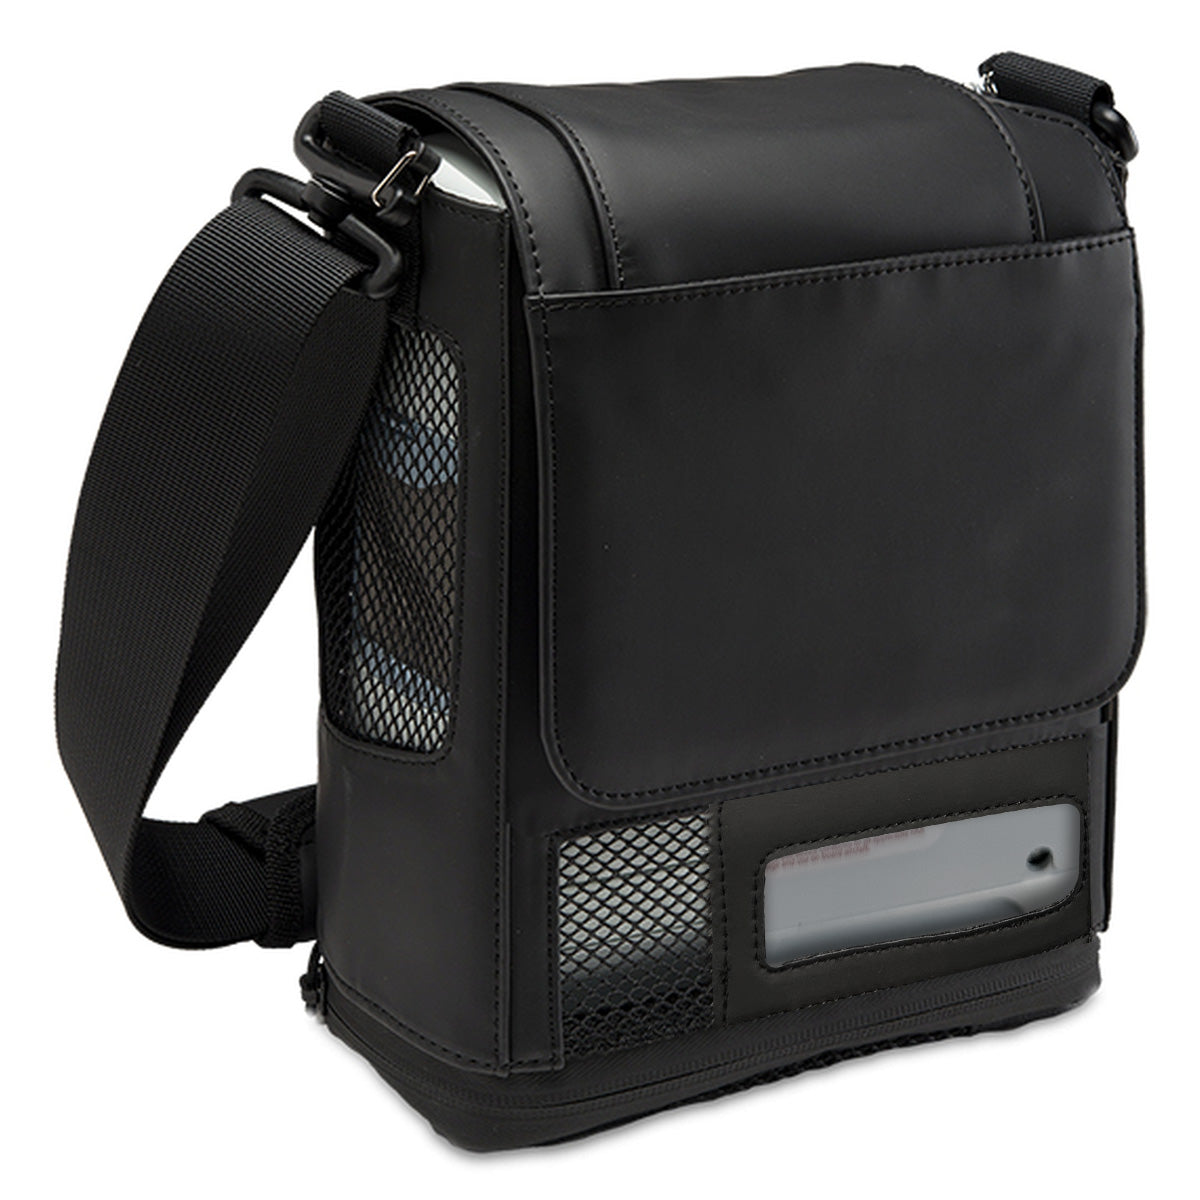 Carry Bag (with Adjustable Shoulder Strap) for Inogen One G4 Portable Oxygen Concentrators